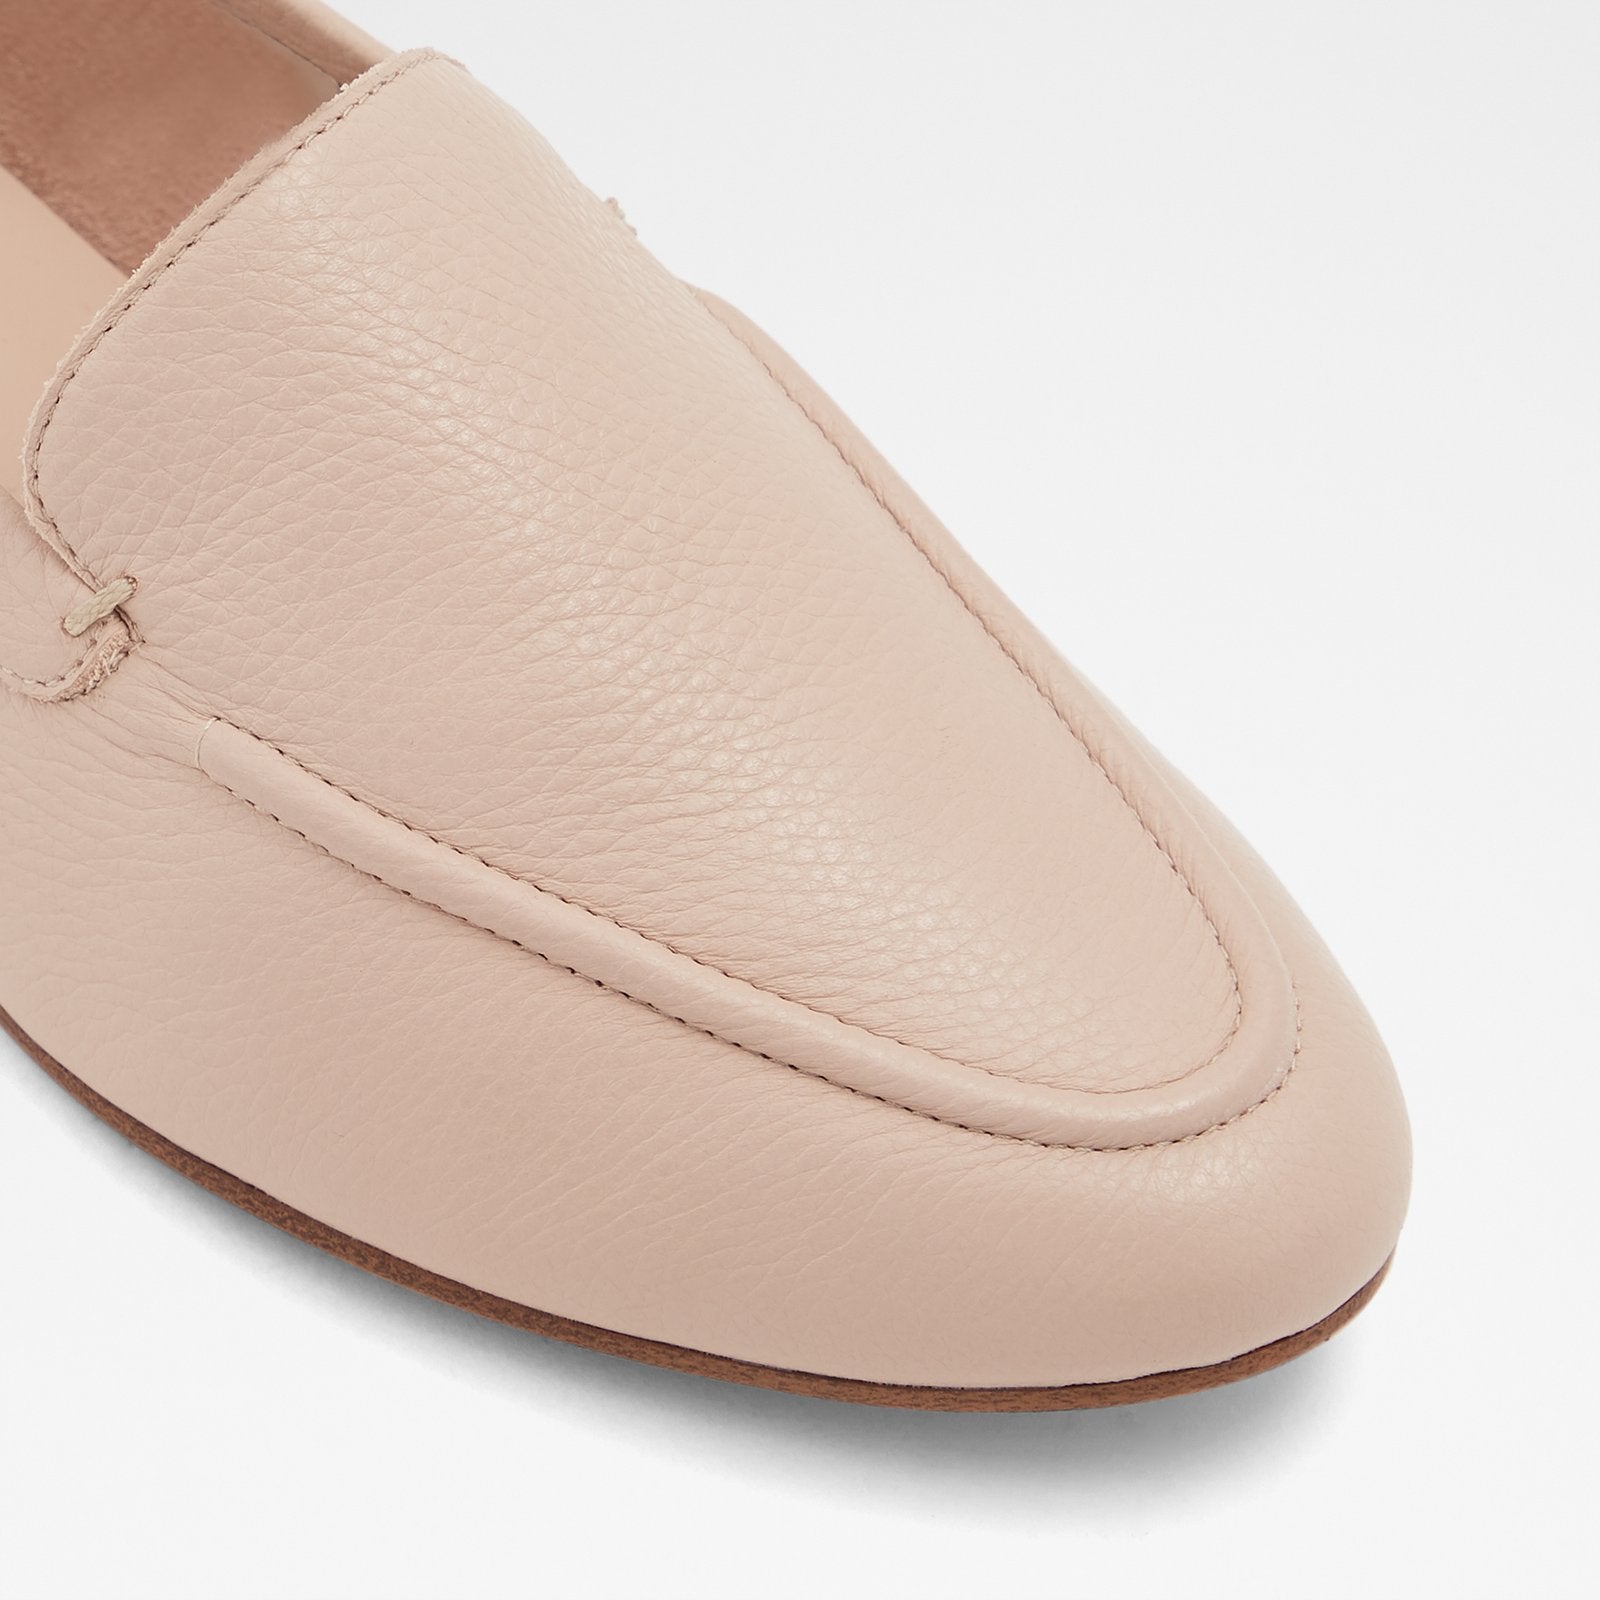 Aldo Women's Loafers Joeya (Bone) – ALDO Shoes UK